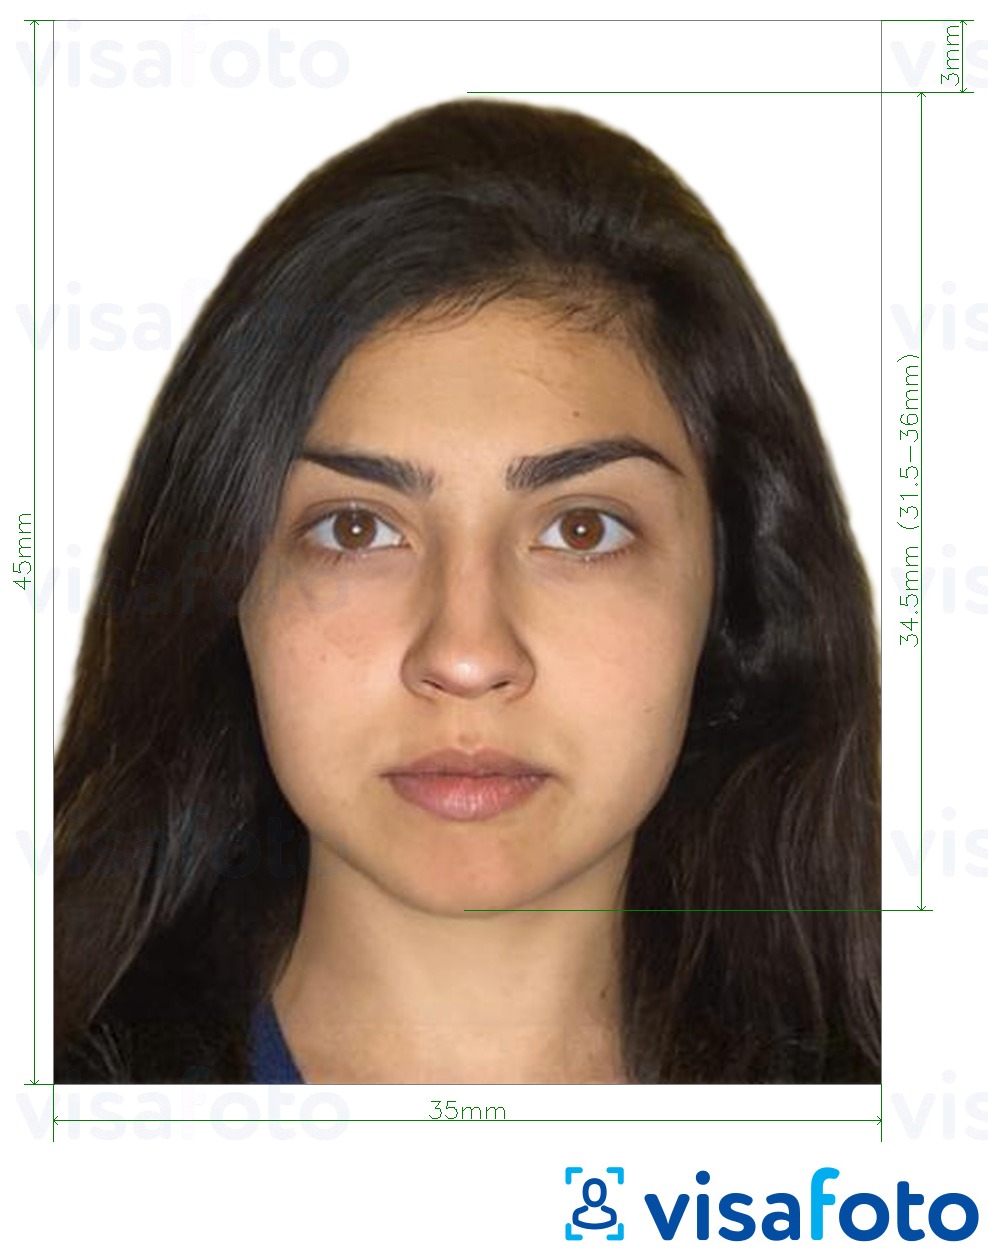 نمونه ی یک عکس برای گذرنامه بوتان 45x35mm (4.5x3.5 سانتی متر) با مشخصات دقیق